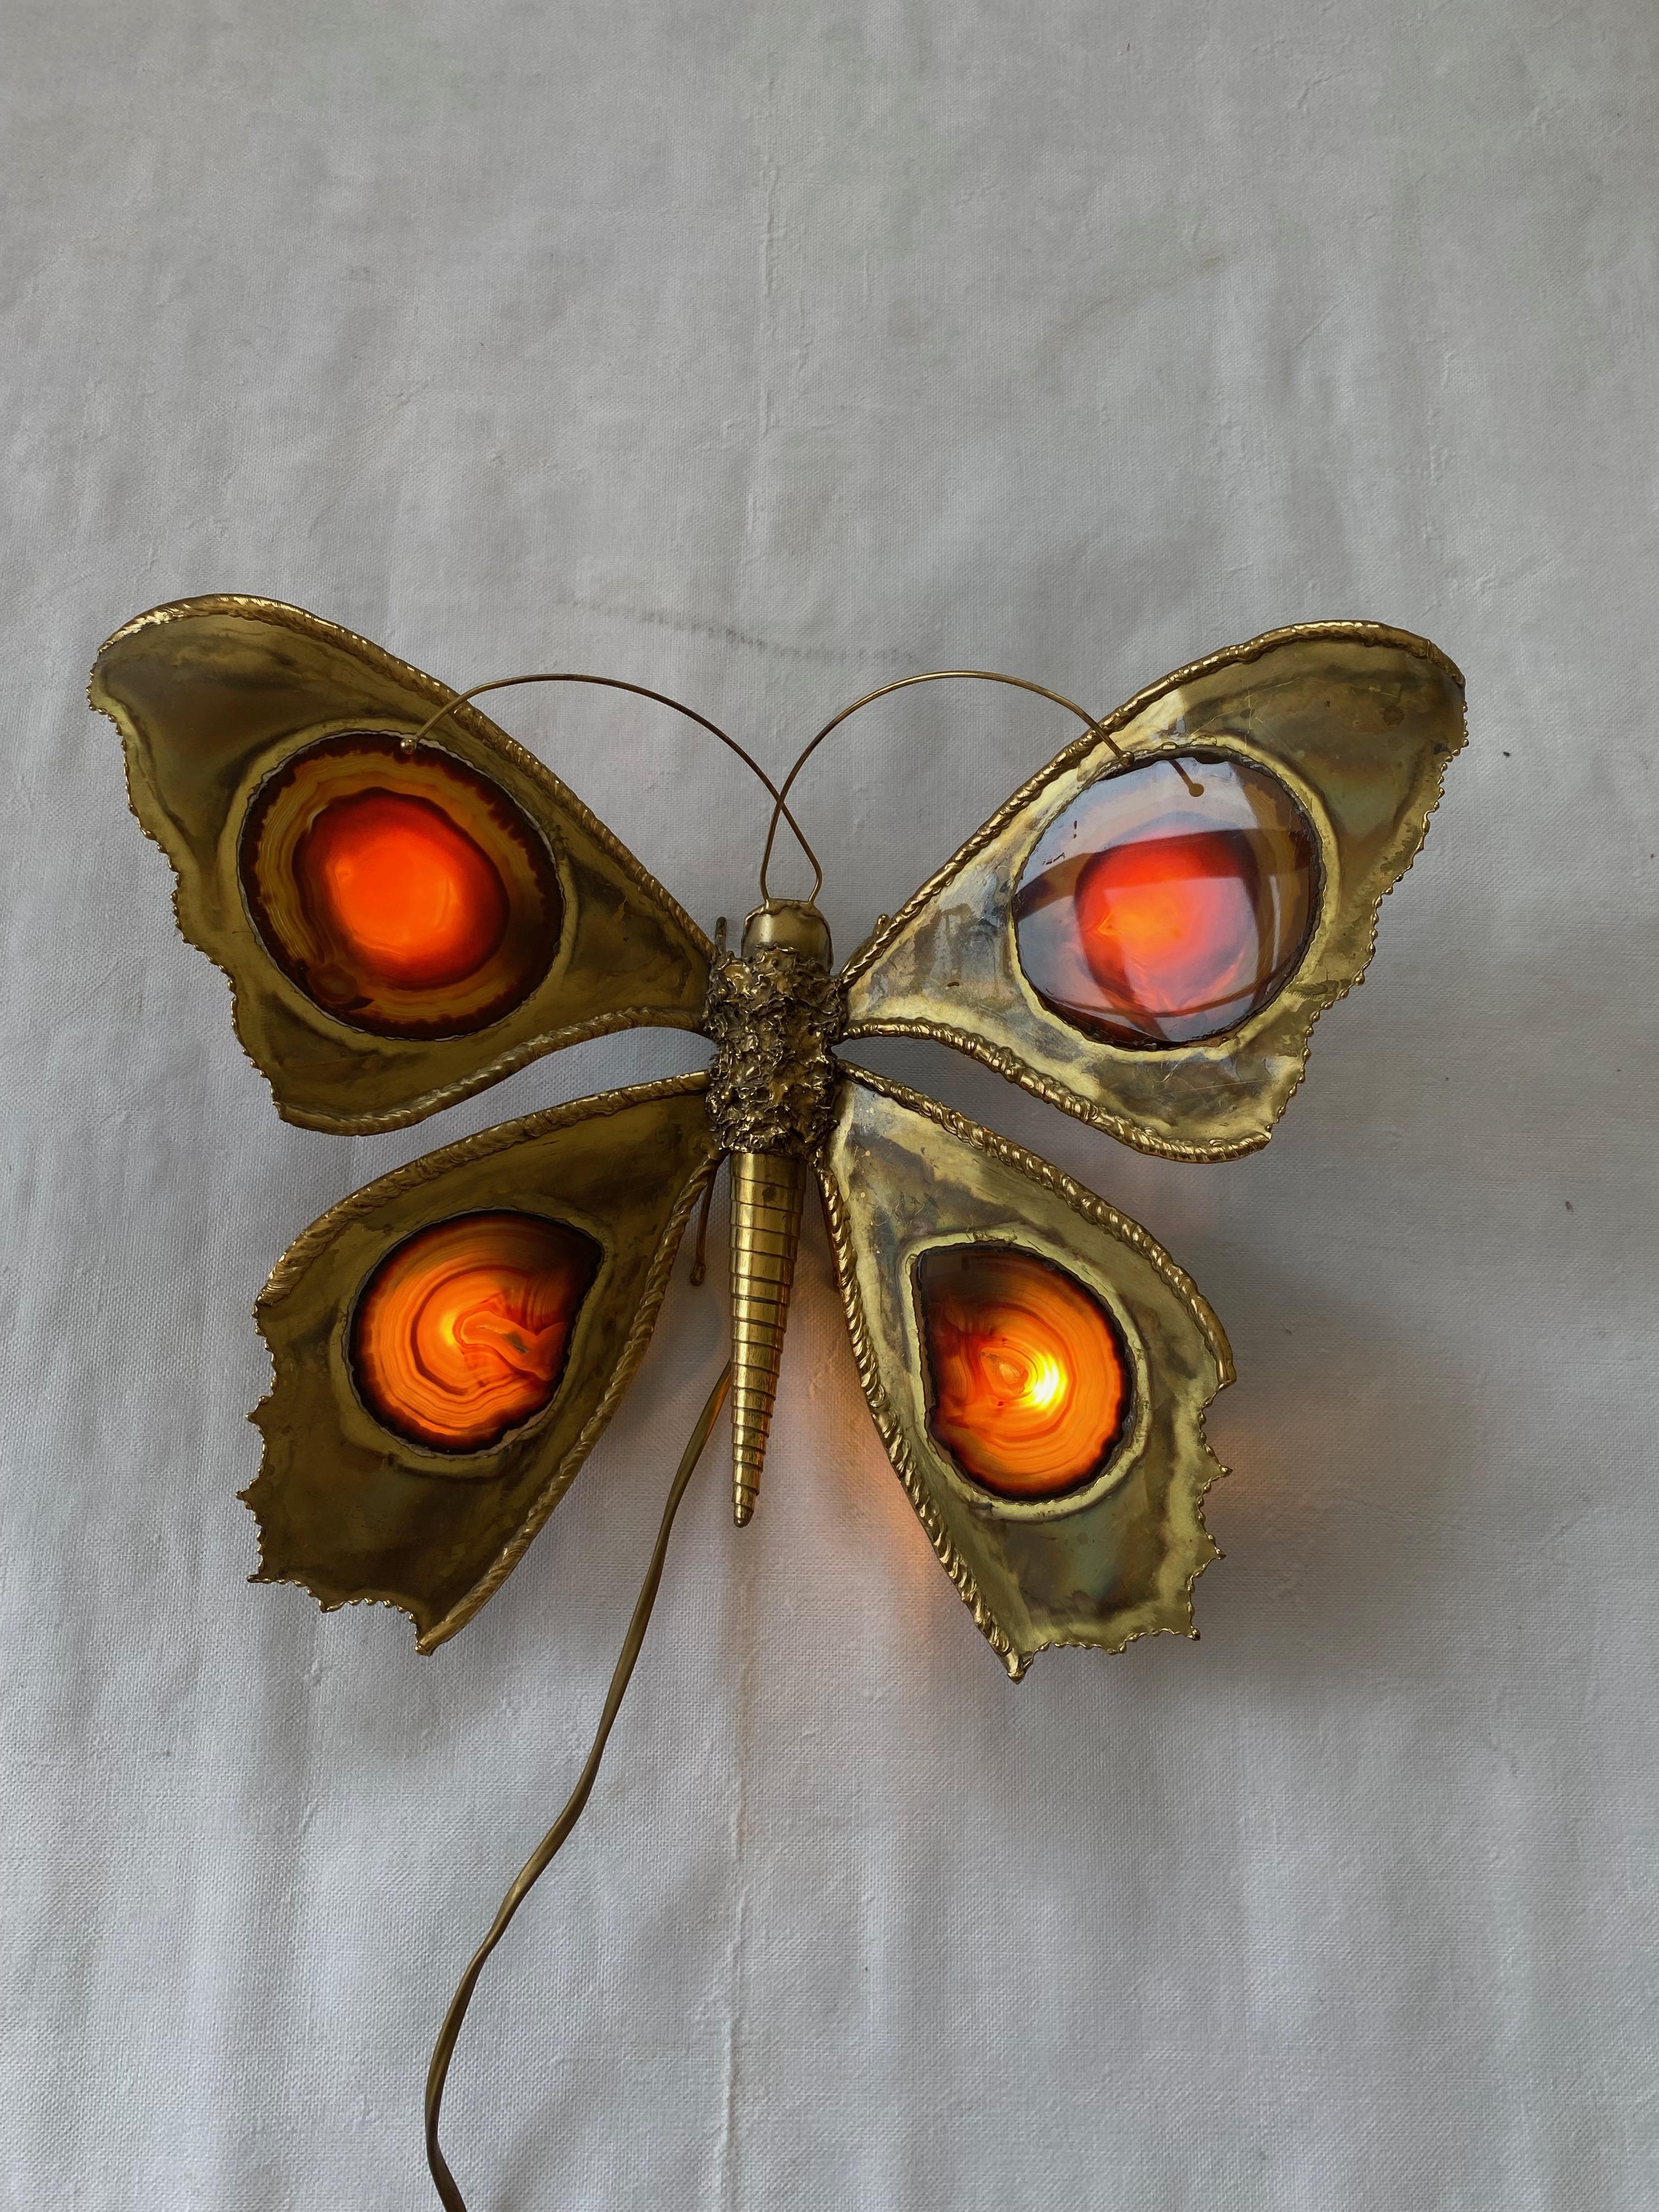 Schmetterlingswandleuchte aus Bronze oder Messing, 4 Glühbirnen, Achatflügel, Gebrauchszustand, um 1970
Herkunft Frankreich
Flügelhöhe: 33 cm
Breite: 40cm
Höhe: 33cm
Tiefe: 13cm